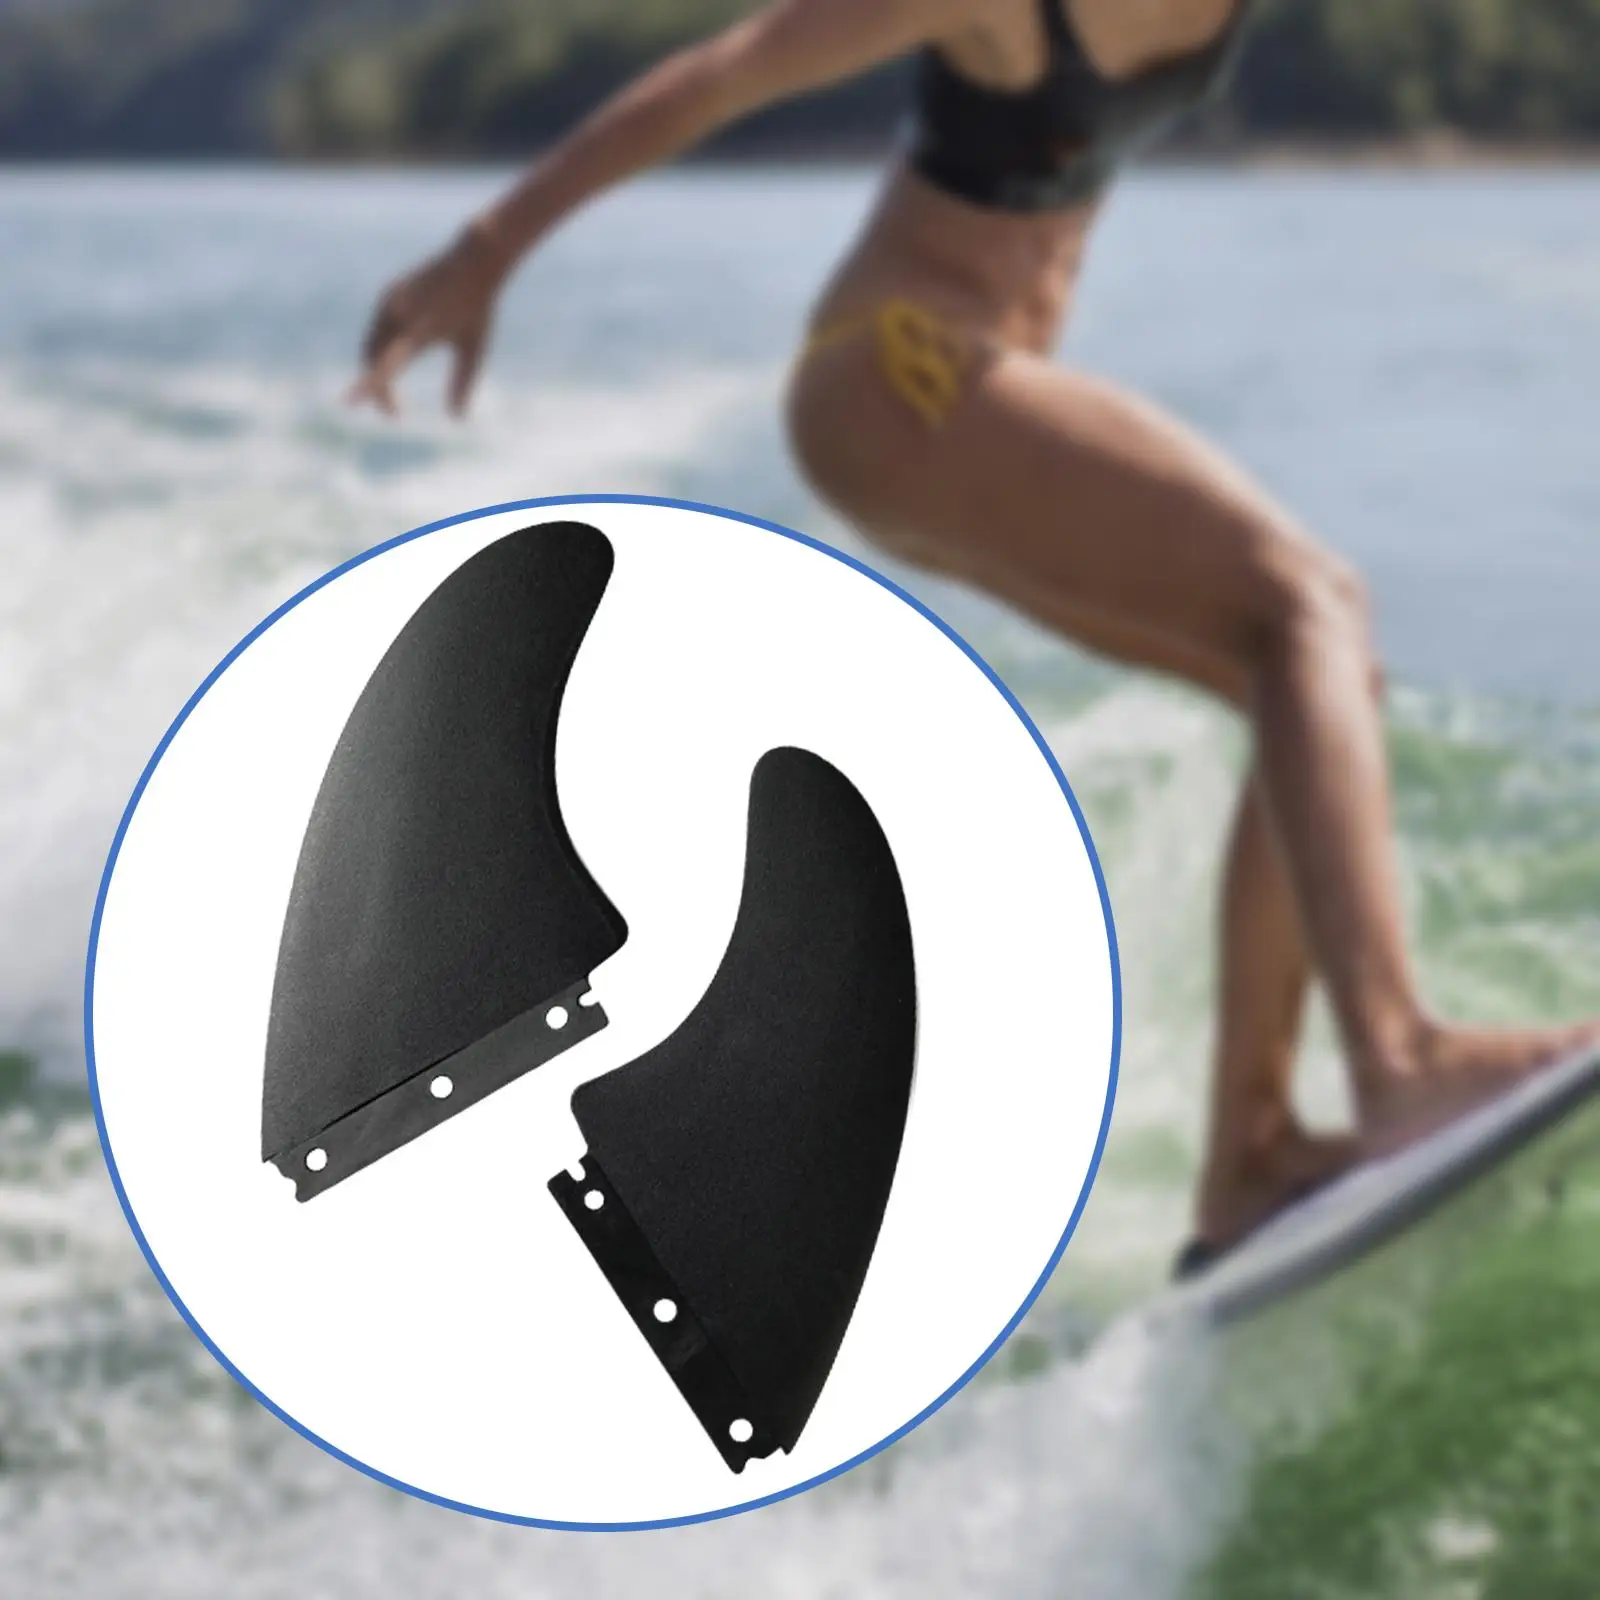 2Pcs Surfboard Fins Surf Board Tail Rudder for Longboard Canoe Accessory